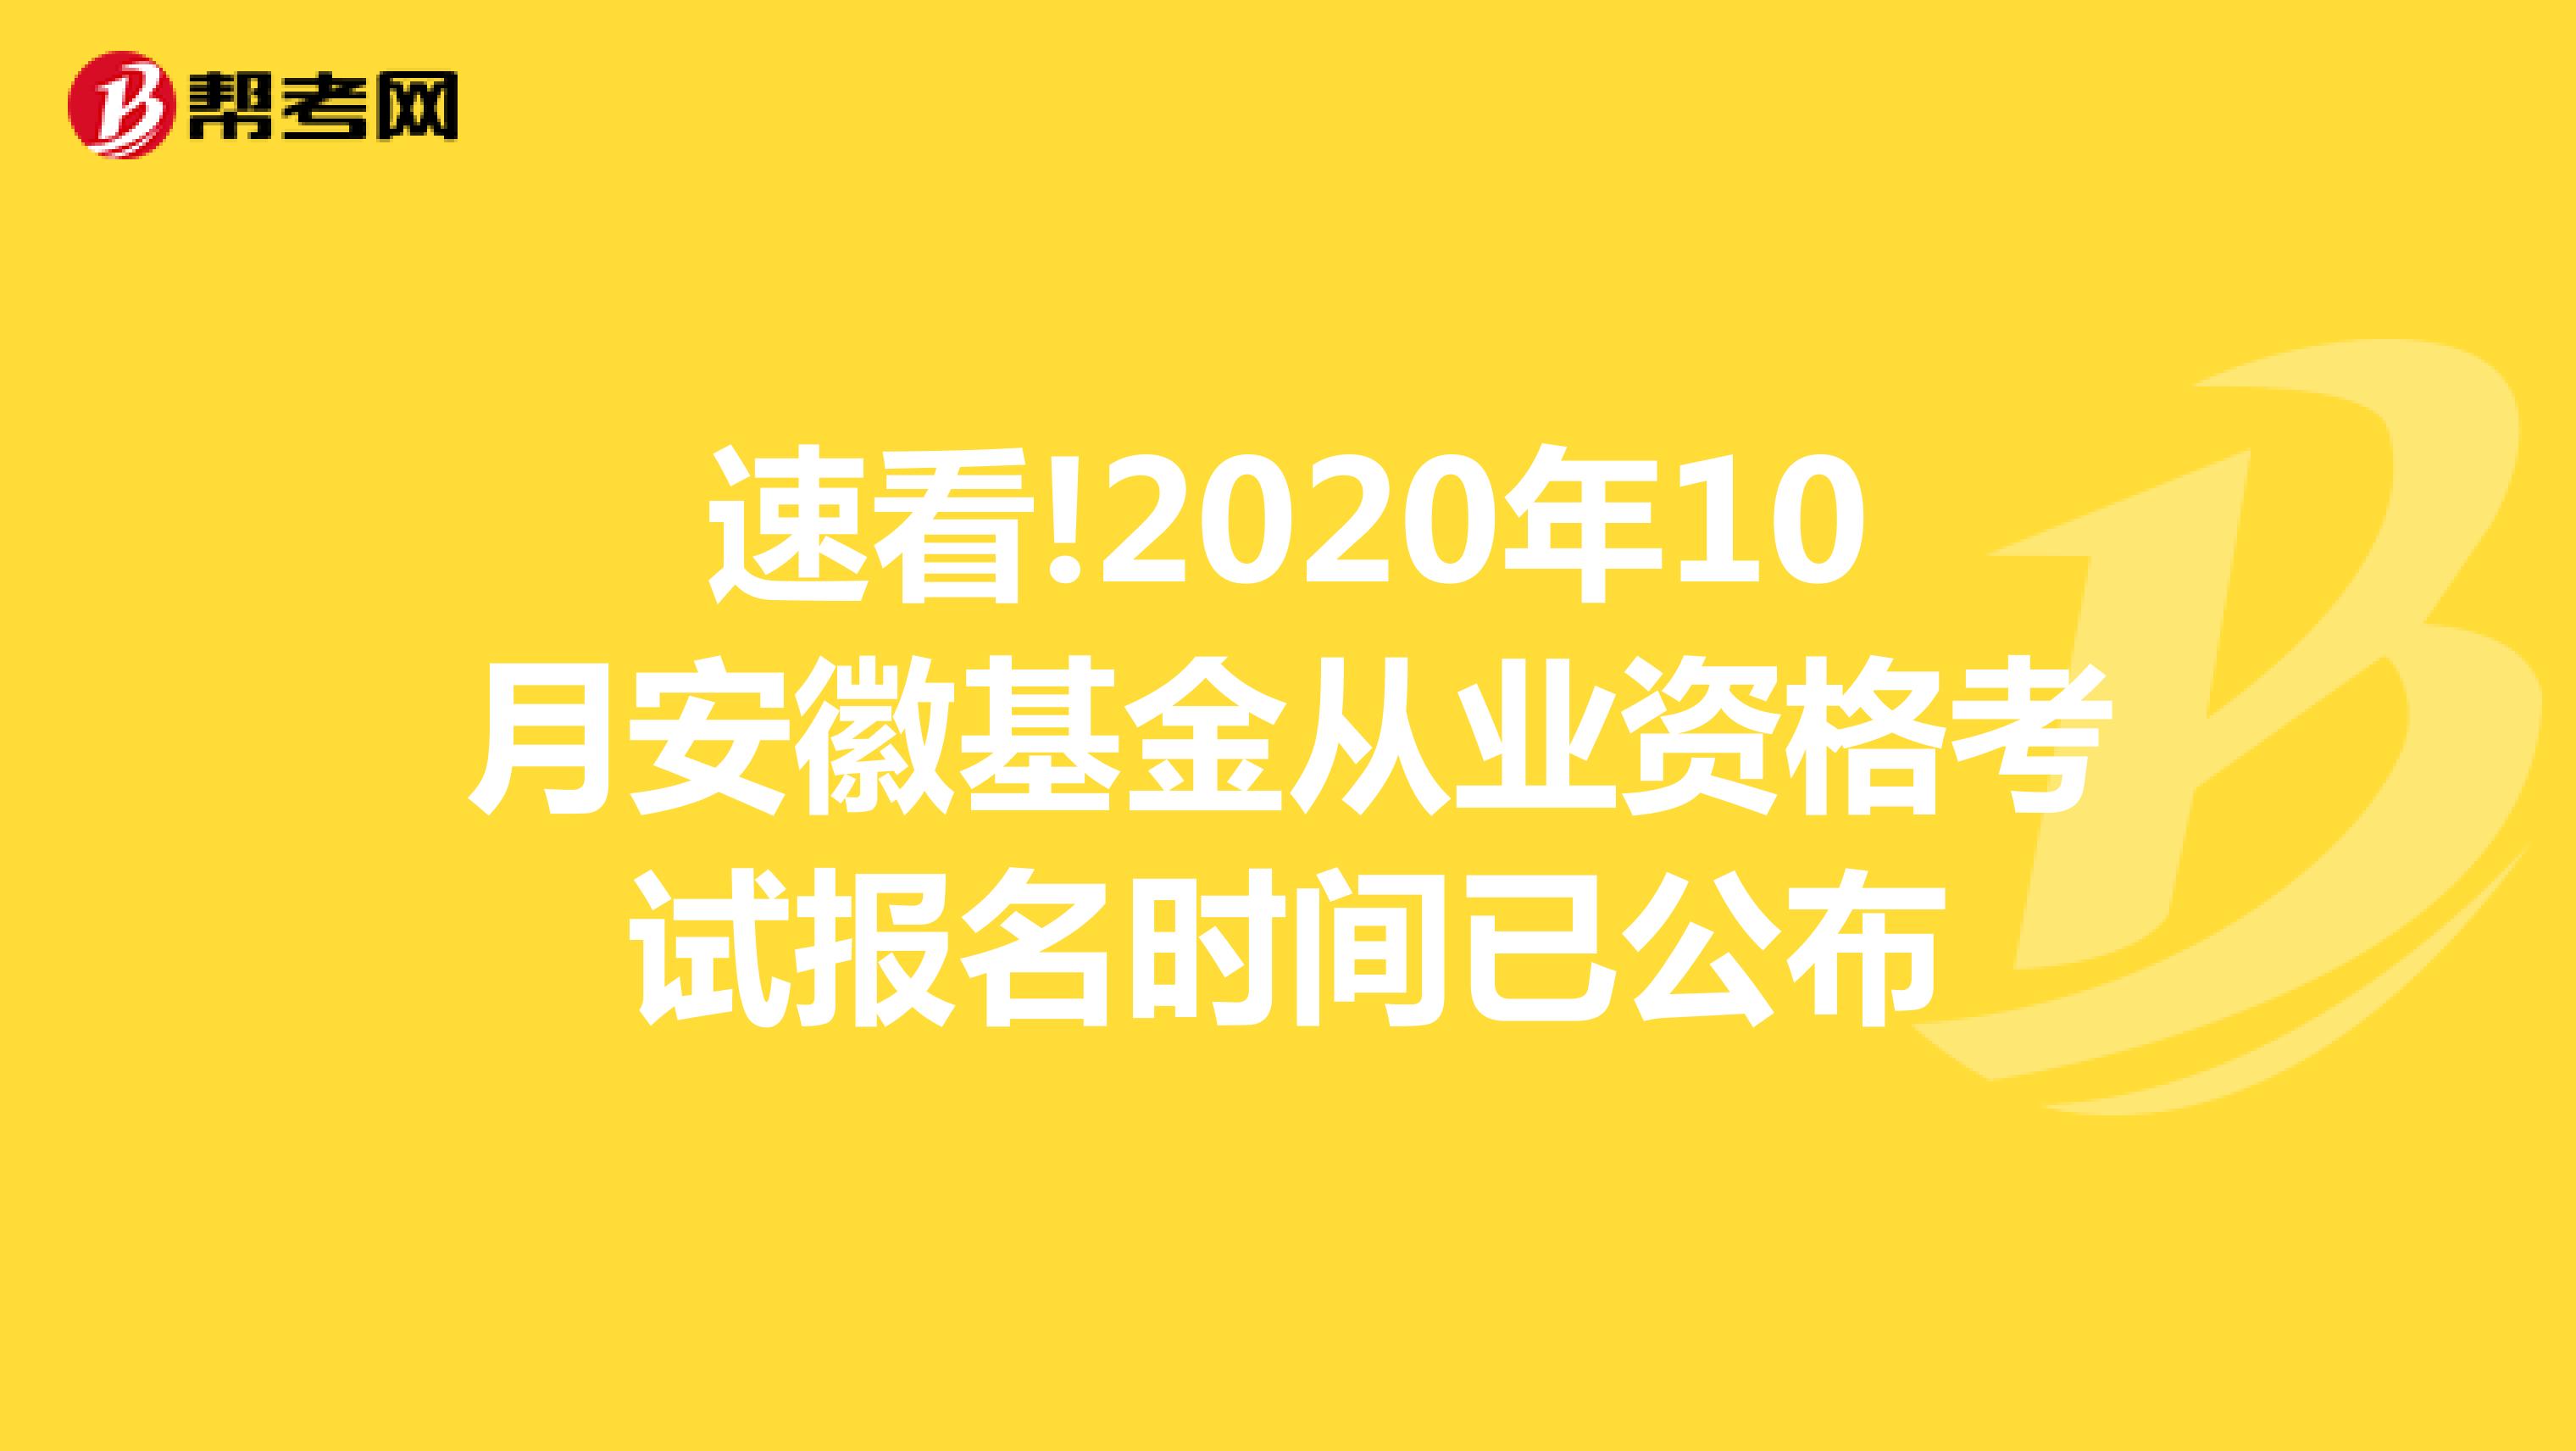 速看!2020年10月安徽基金从业资格考试报名时间已公布